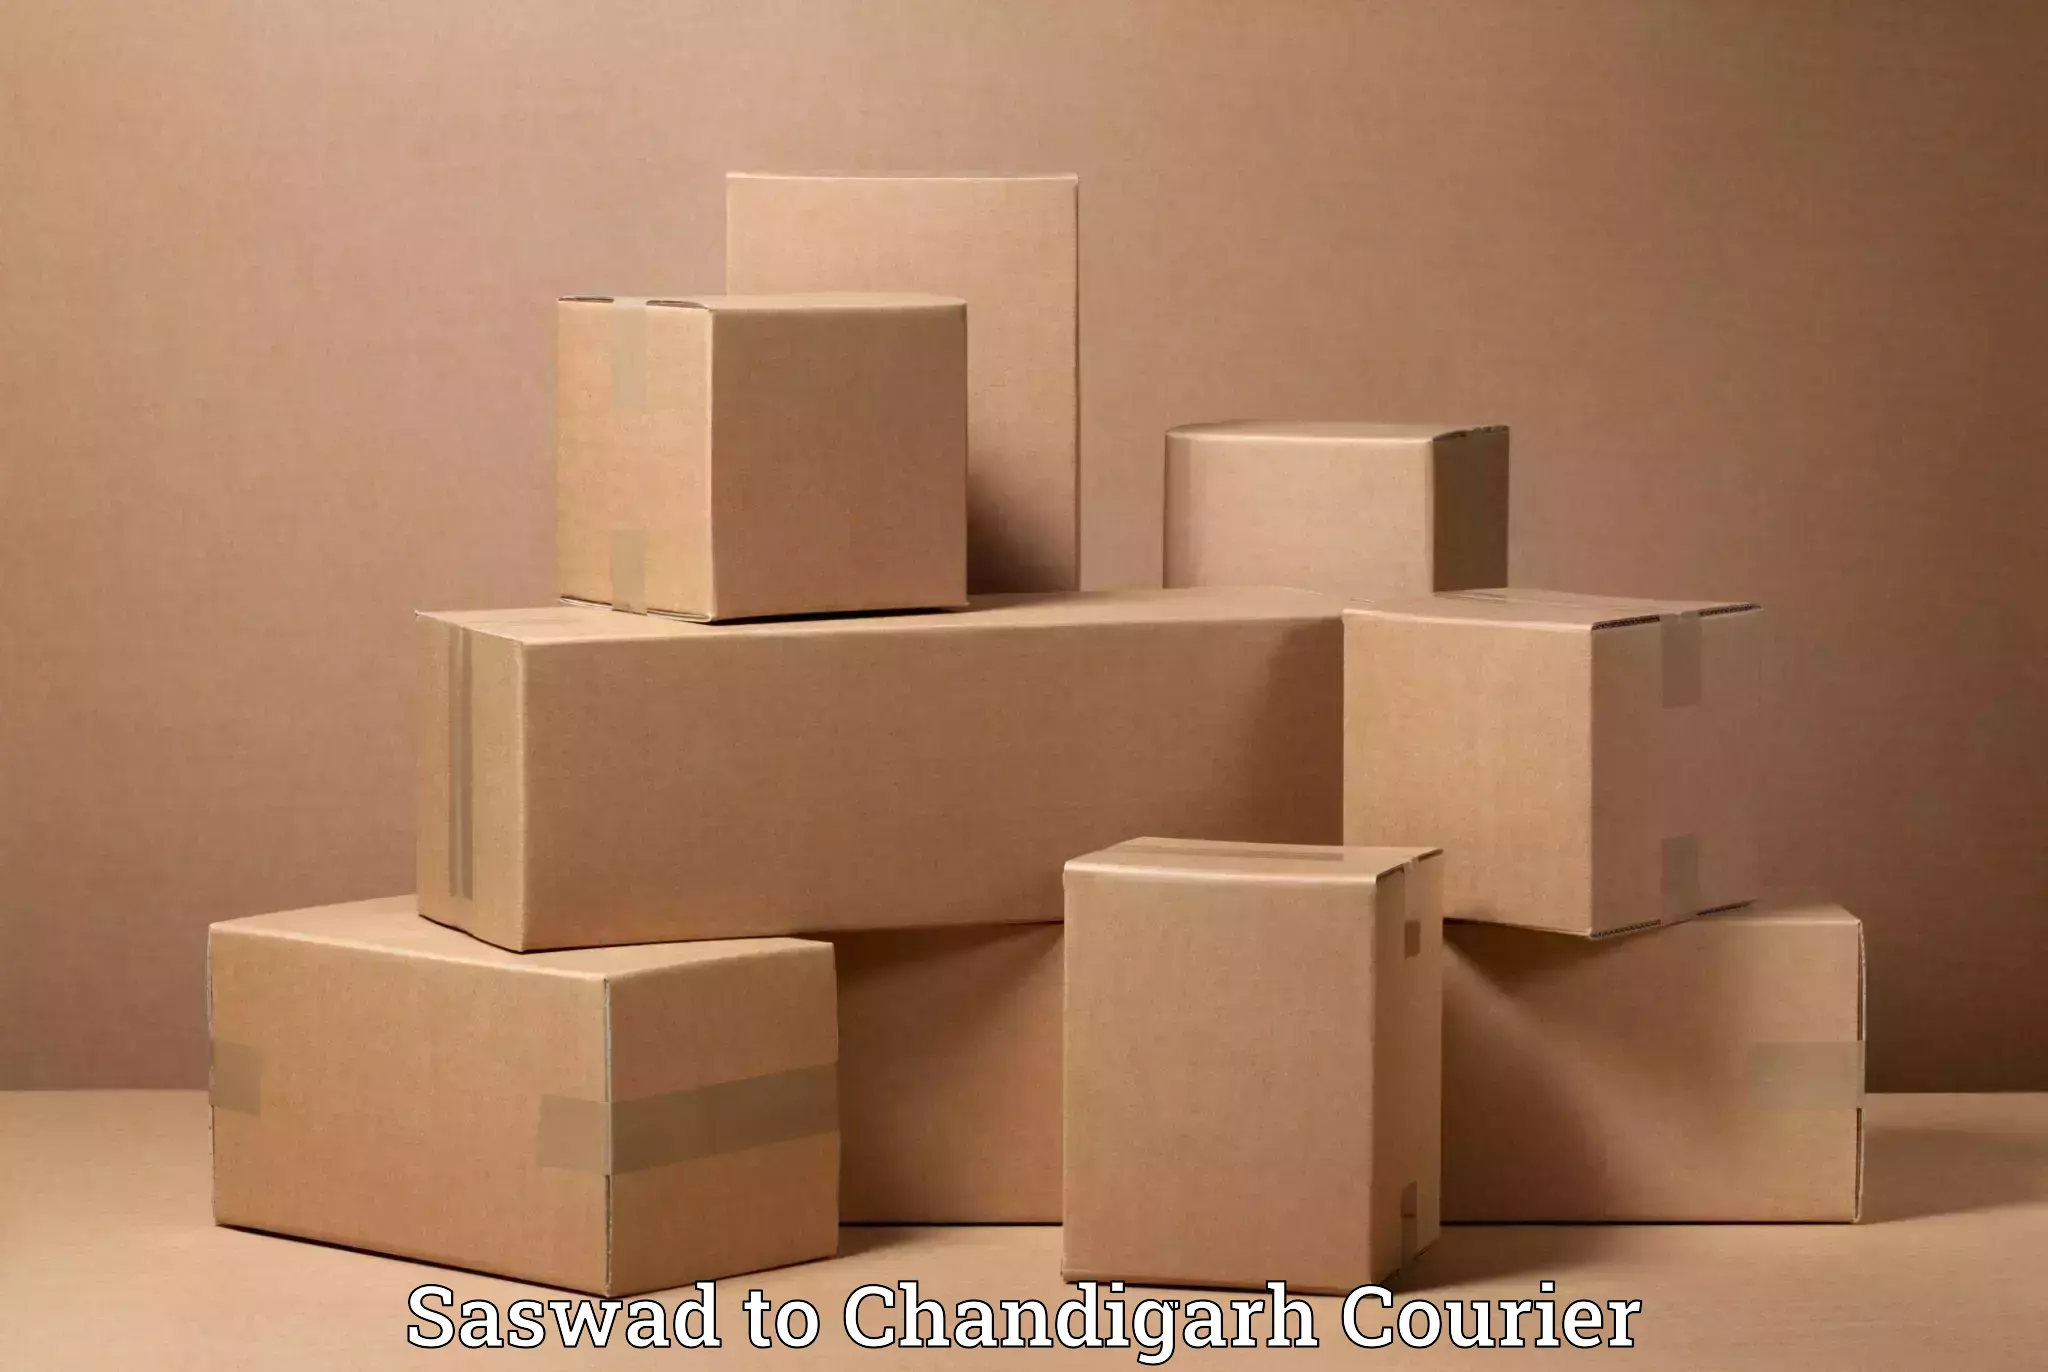 Efficient relocation services Saswad to Chandigarh